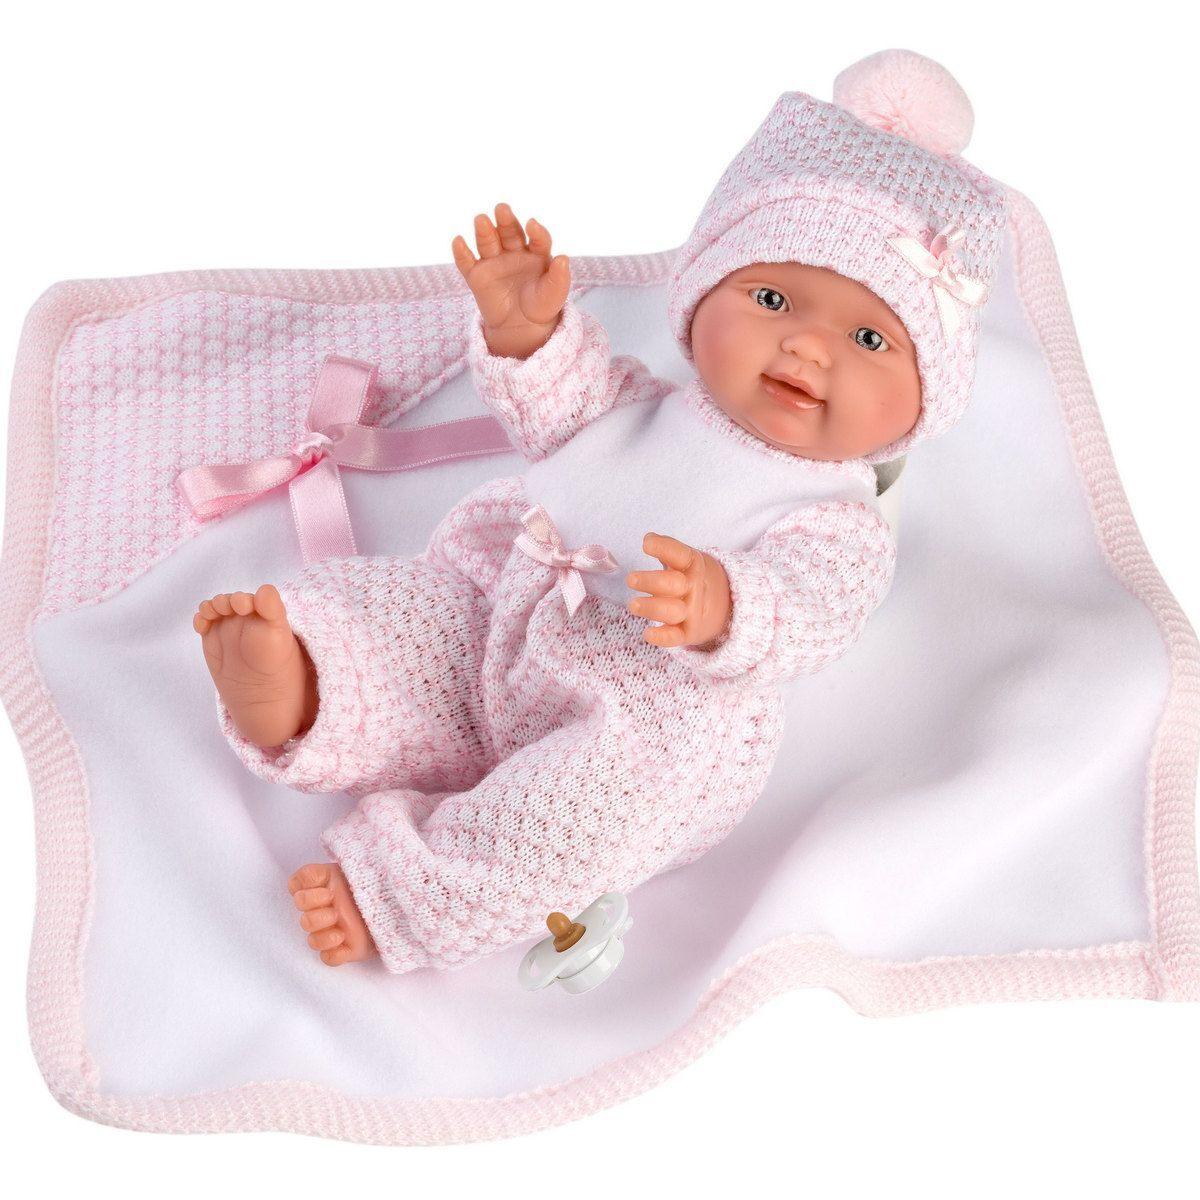 LLORENS: Пупс Малышка 26см, с розовым одеялом, фото 1